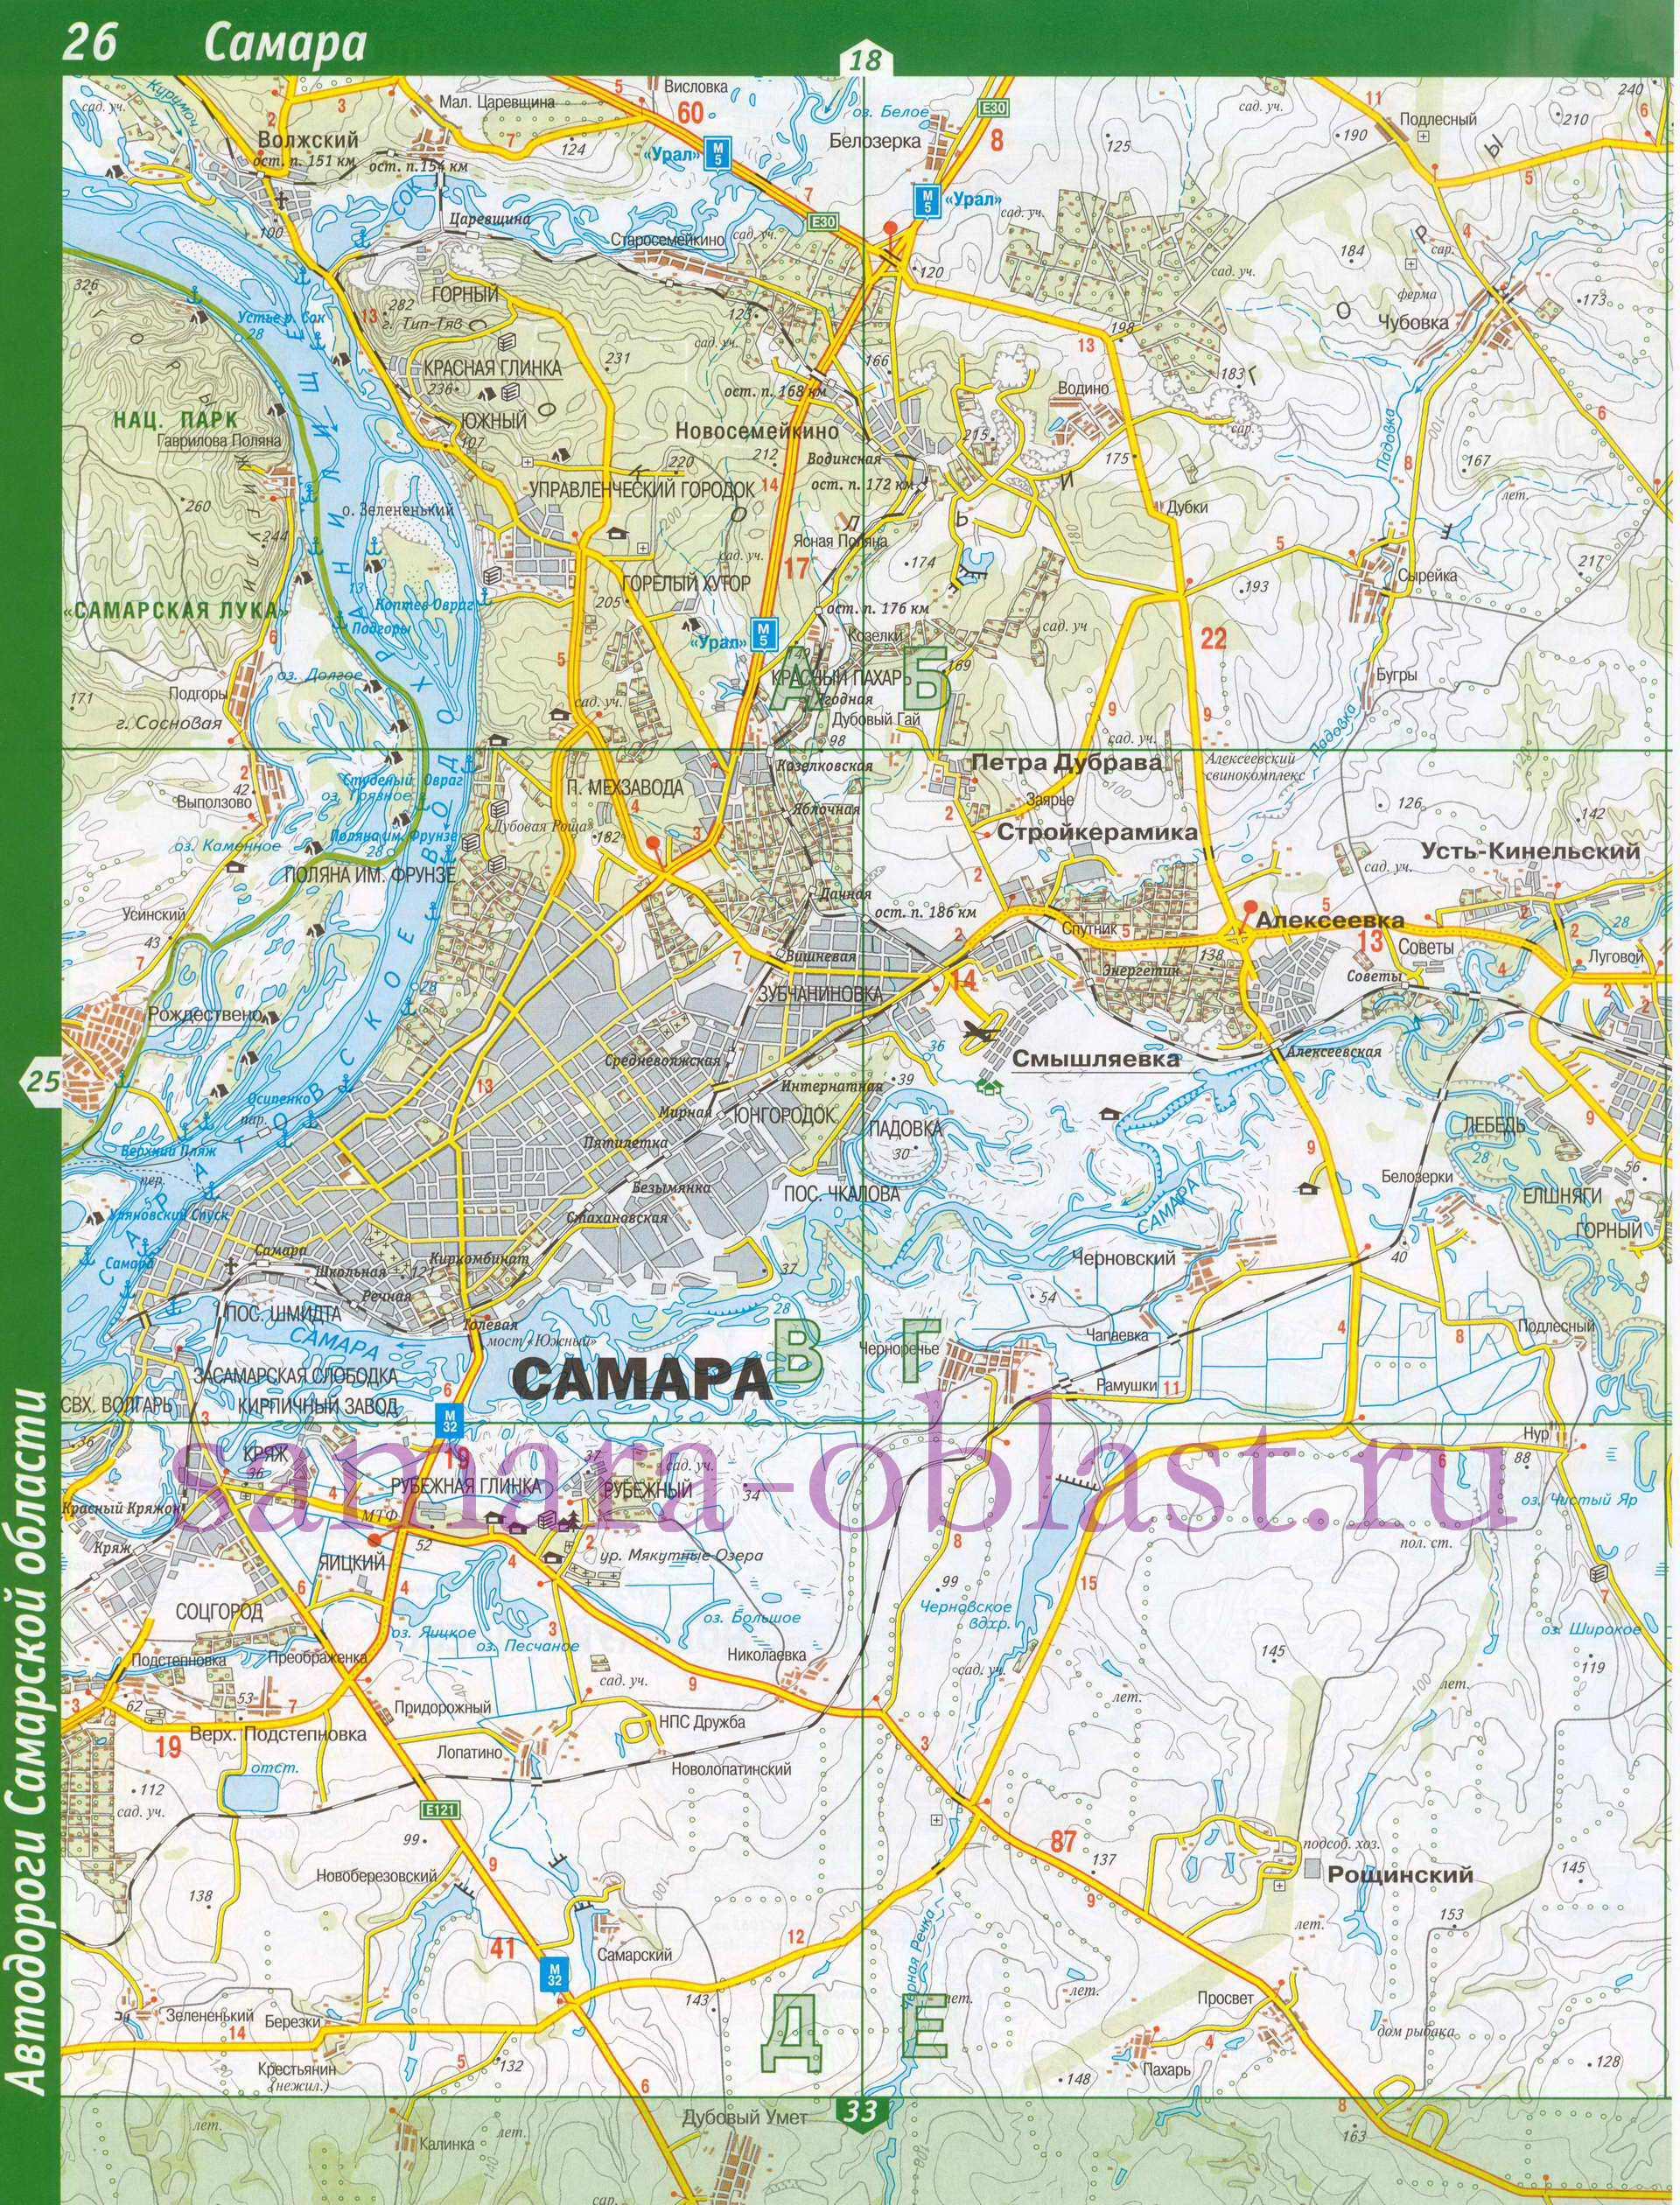 Карта Волжского района Самарской области. Автомобильные дороги - Волжский район, B0 - 